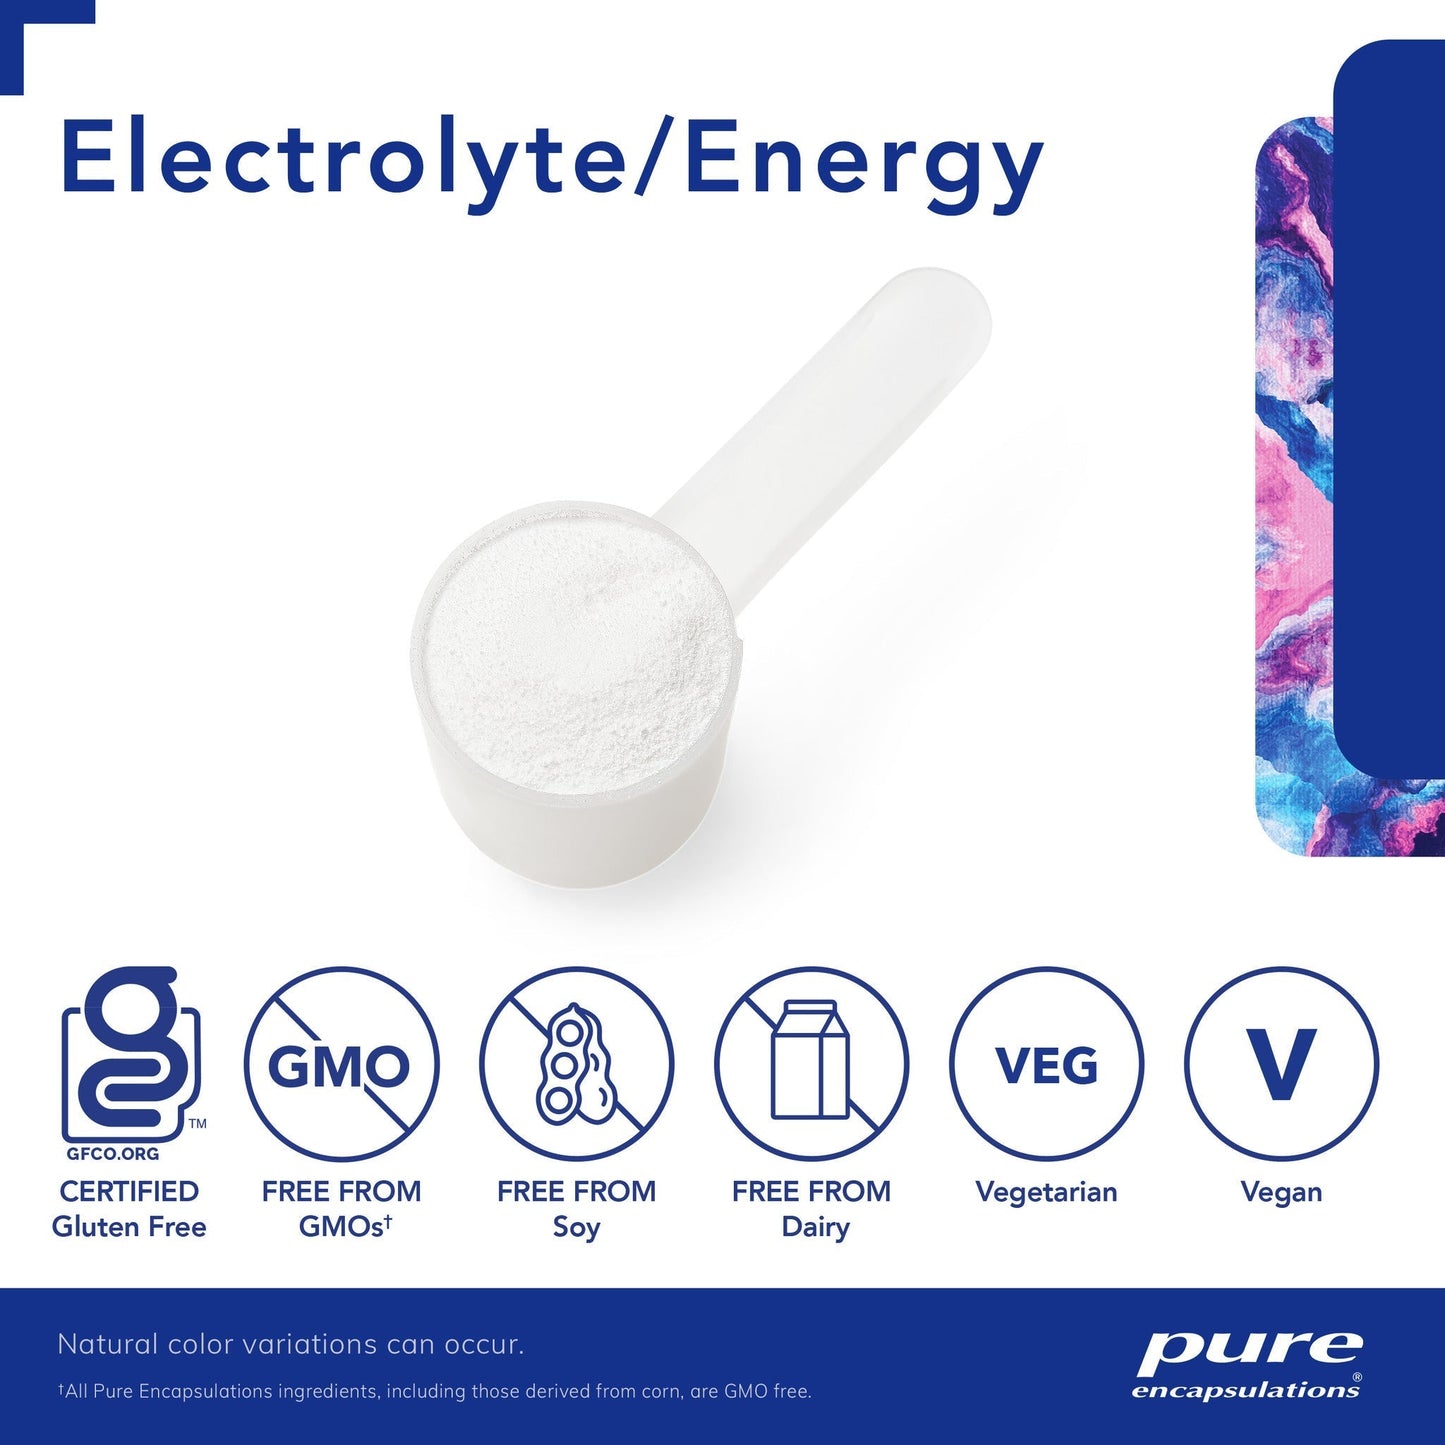 Electrolyte/Energy Formula